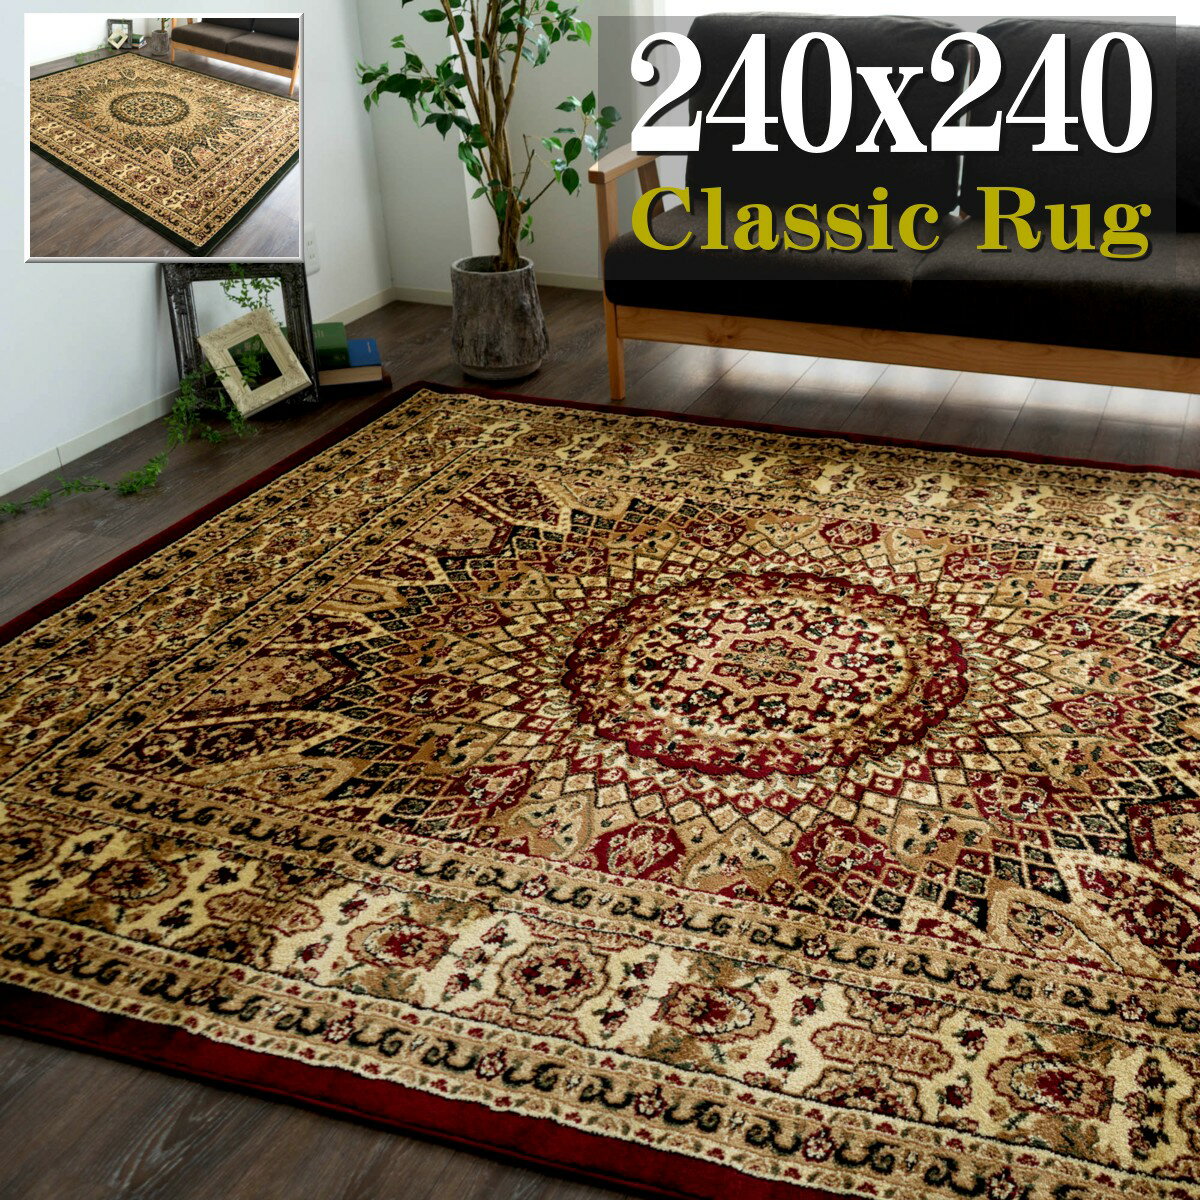 4.5畳 用 カーペット トルコ製のお得な ラグ じゅうたん 240×240cm 正方形 ヨーロピアン絨毯 グリーン レッド 赤 送料無料 ウィルトン織り ラグマット